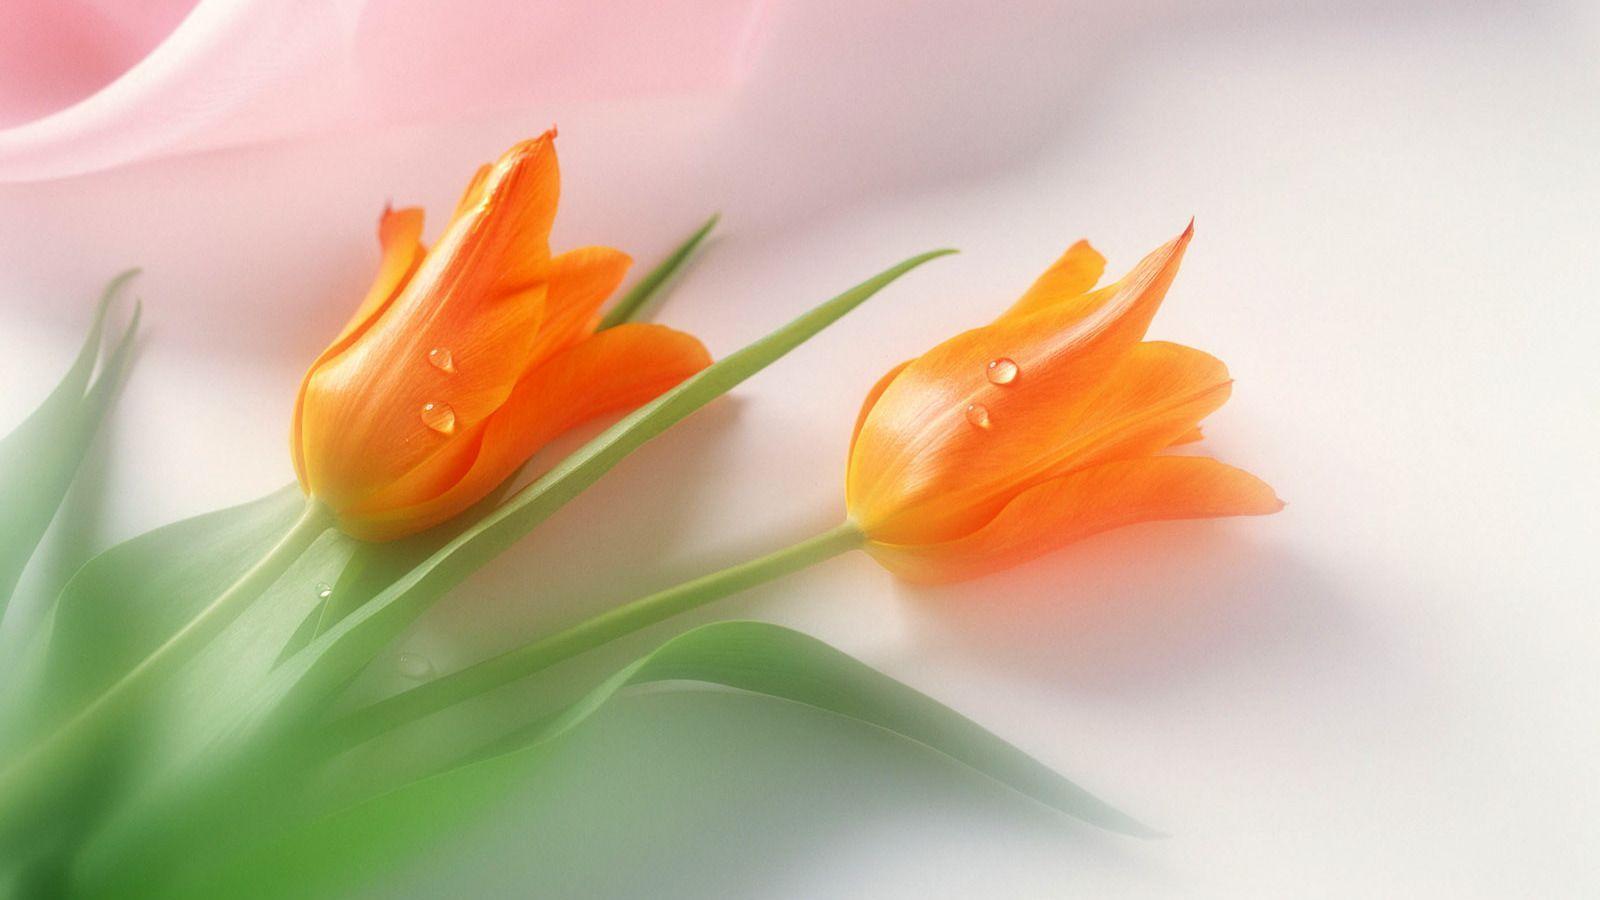 Wallpaper For > Orange Tulips Wallpaper